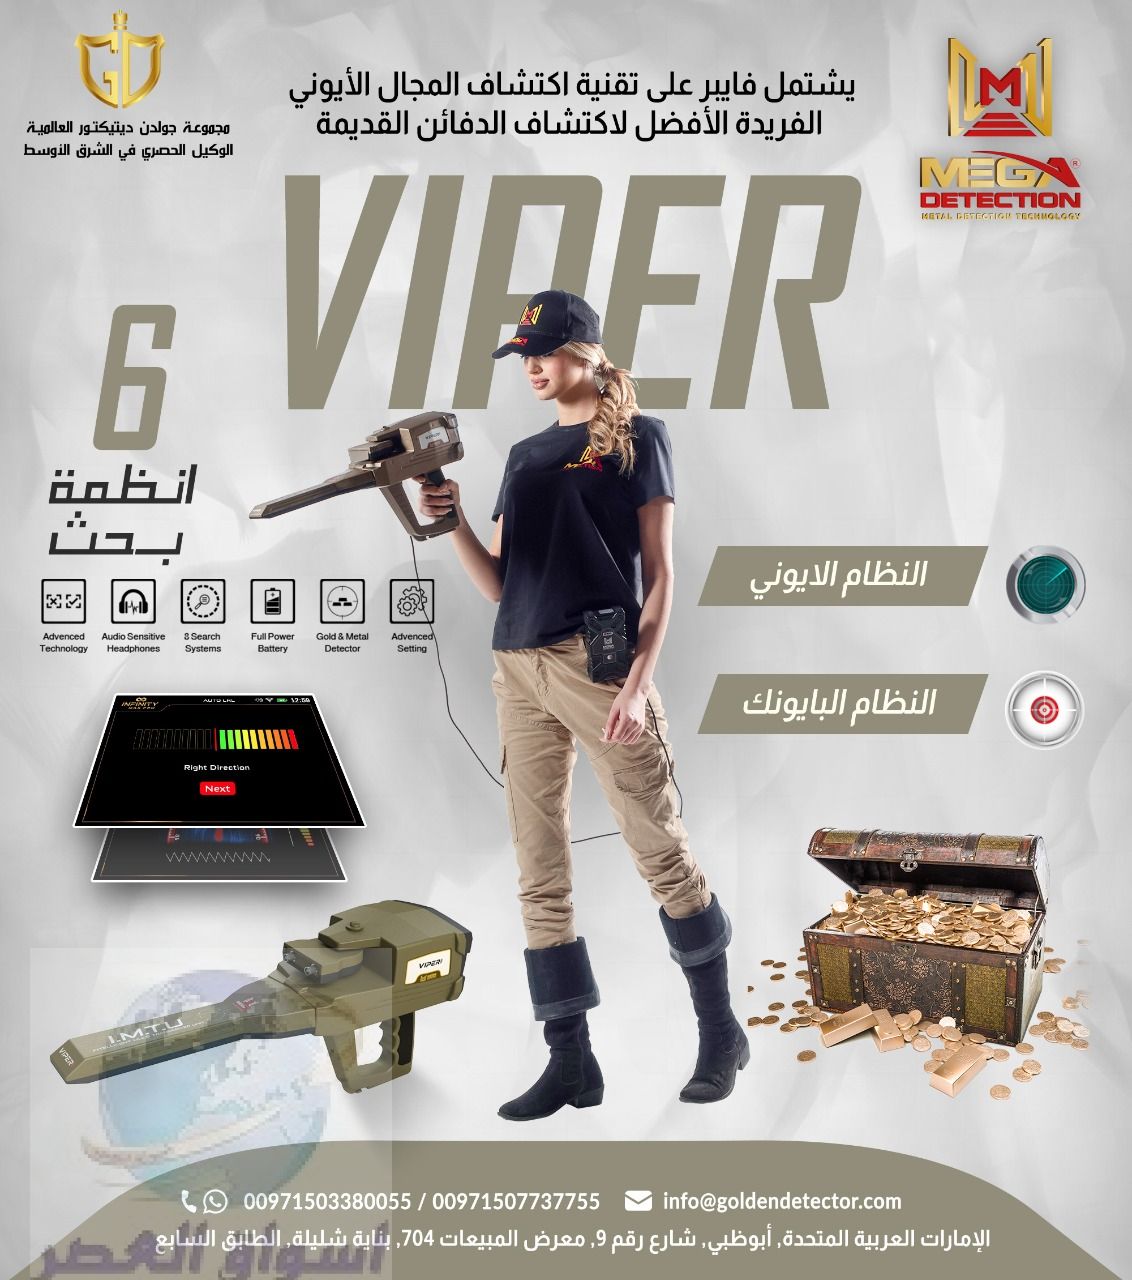 فايبر – Viper جهاز كشف الذهب والمعادن الألماني من